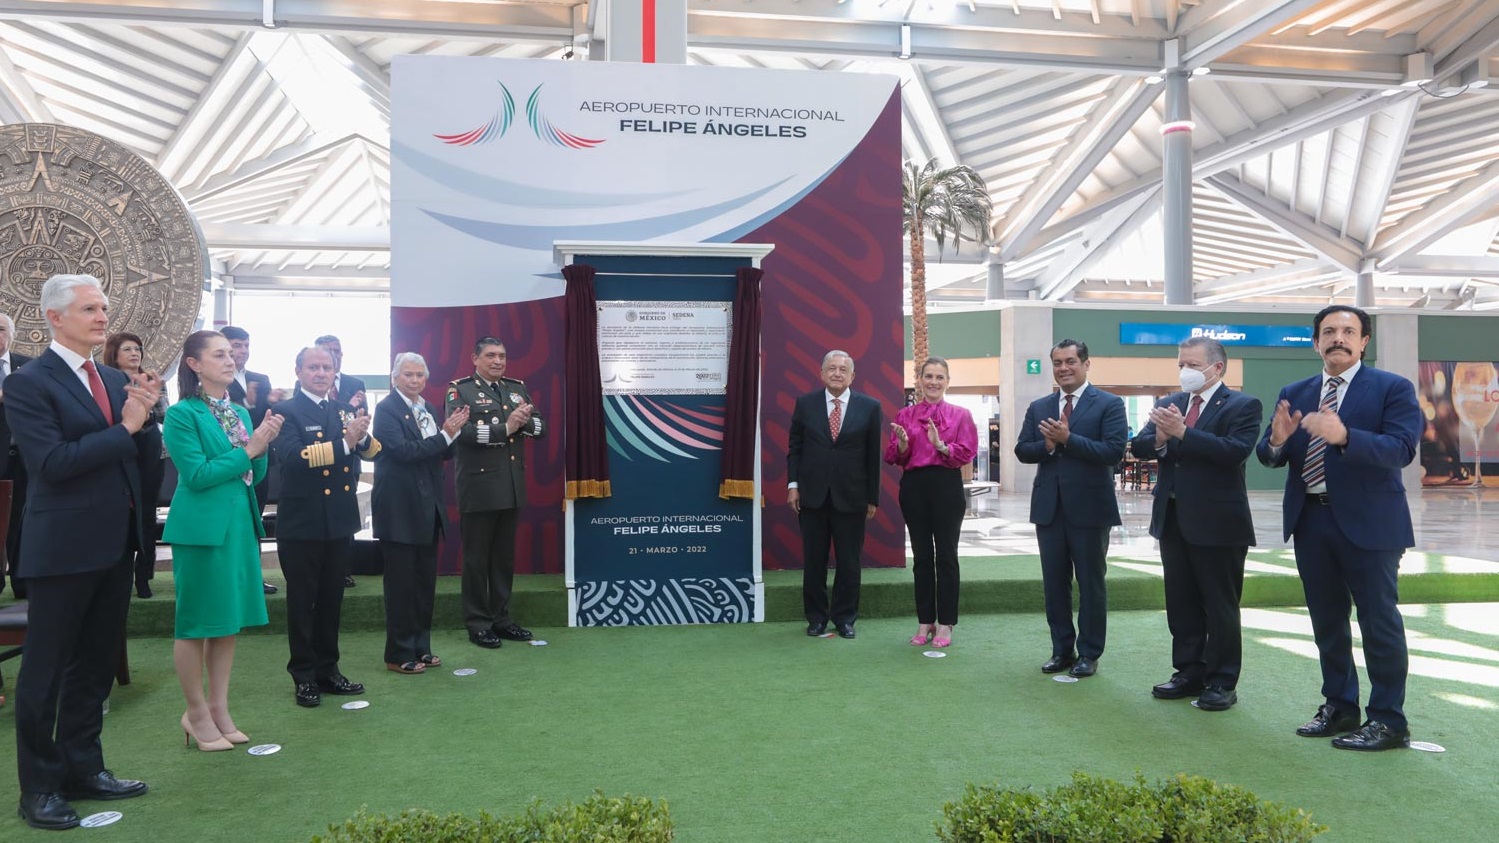 Aeropuerto Internacional Felipe Angeles fortalecera la conectividad aerea y la actividad turistica de